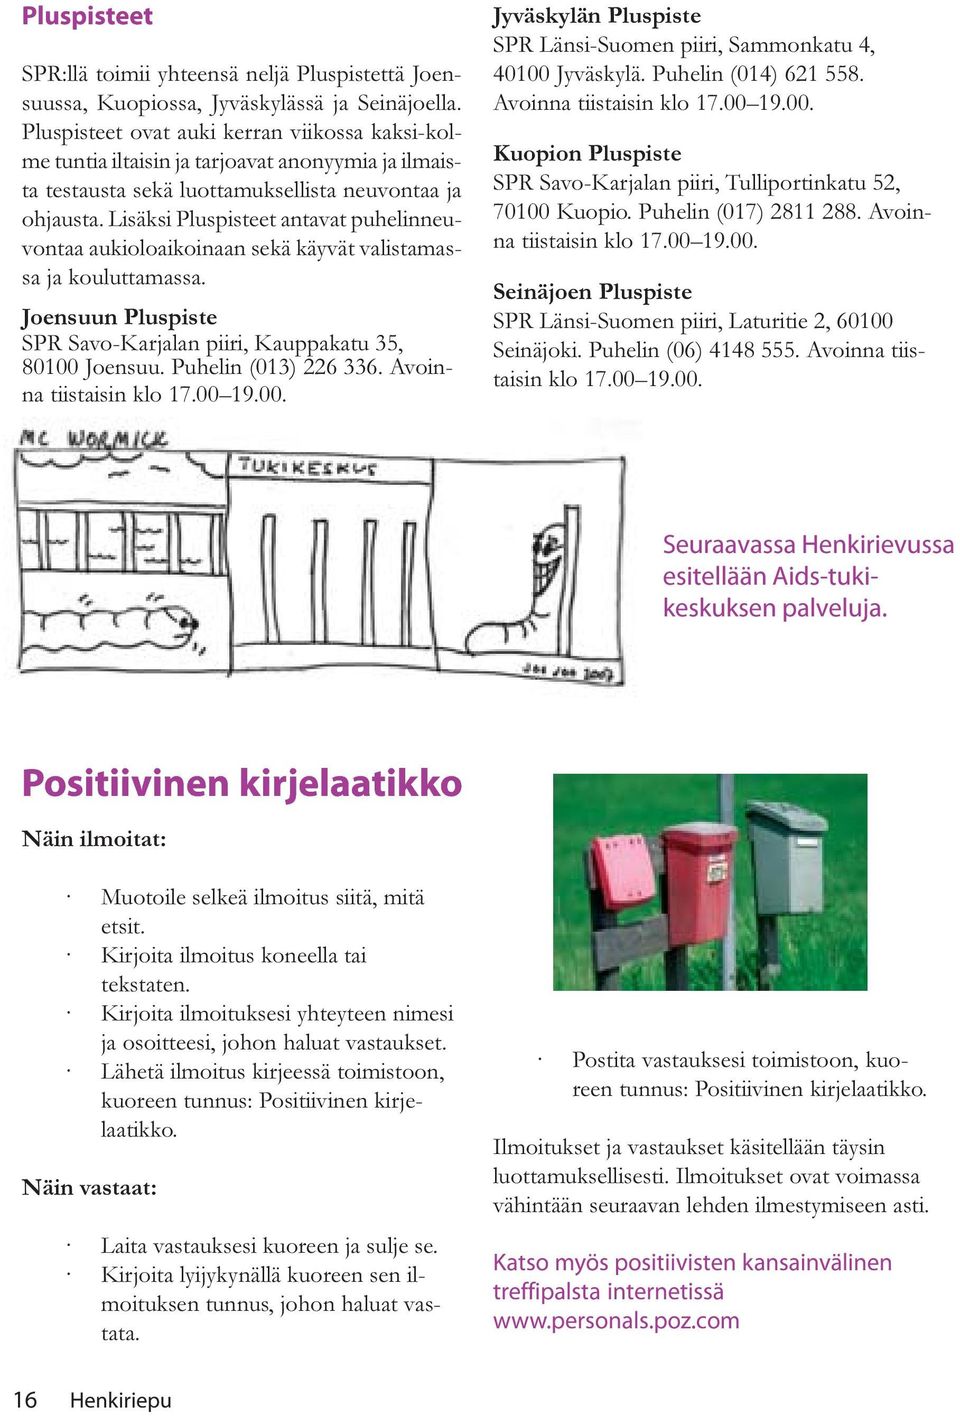 Lisäksi Pluspisteet antavat puhelinneuvontaa aukioloaikoinaan sekä käyvät valistamassa ja kouluttamassa. Joensuun Pluspiste SPR Savo-Karjalan piiri, Kauppakatu 35, 80100 Joensuu.